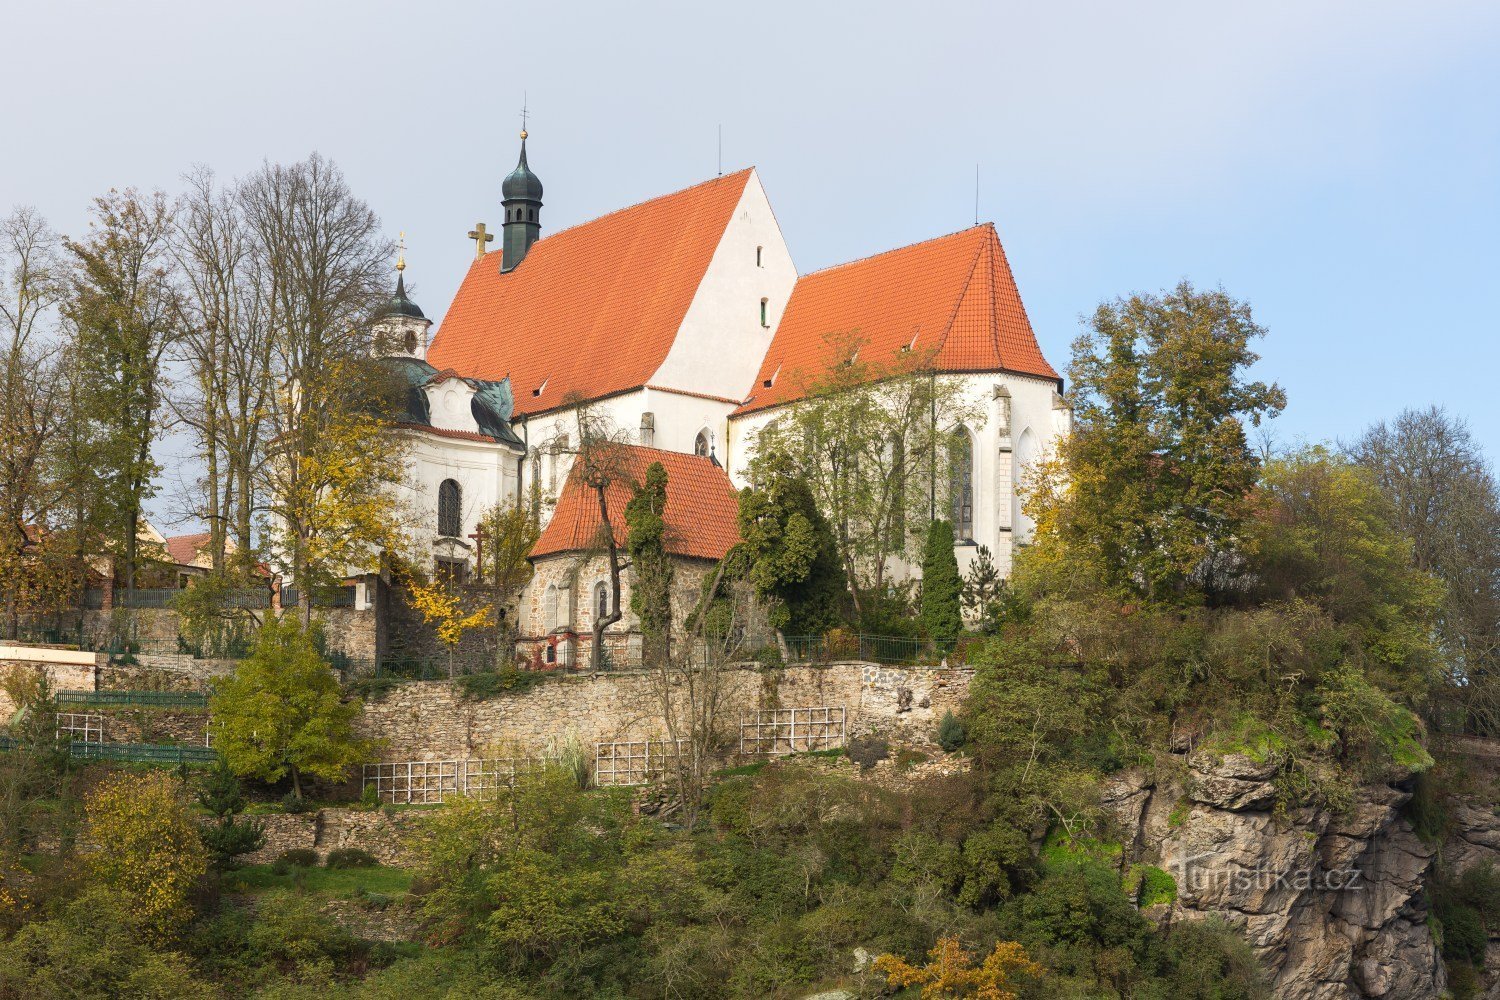 Bechyn Kloster